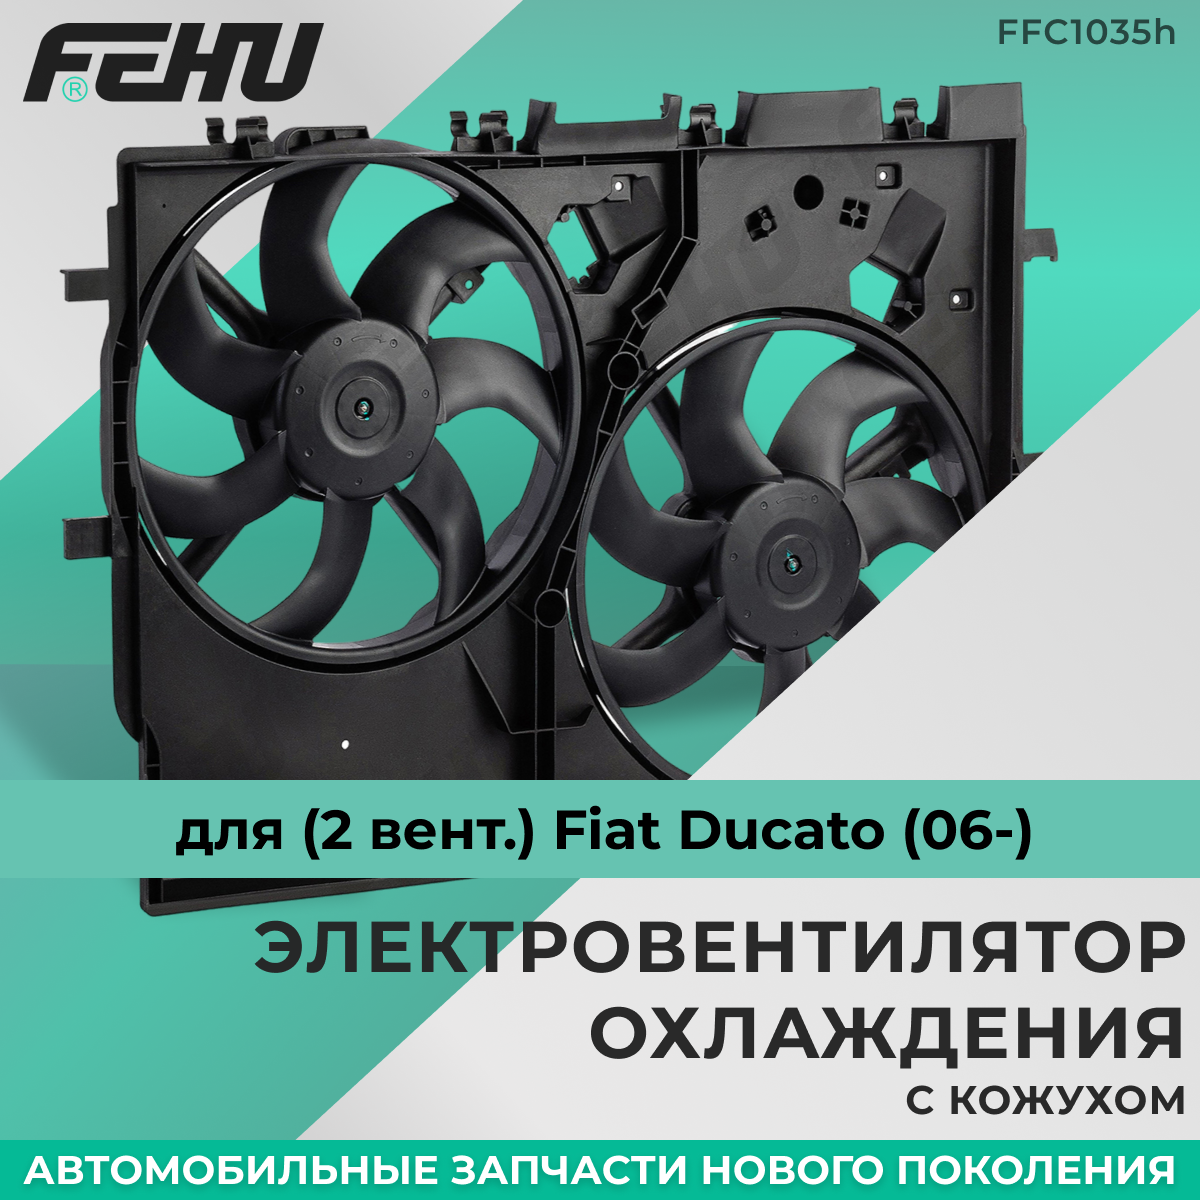 Электровентилятор охлаждения FEHU (феху) с Кожухом (2 вент.) для Fiat Ducato (06-)